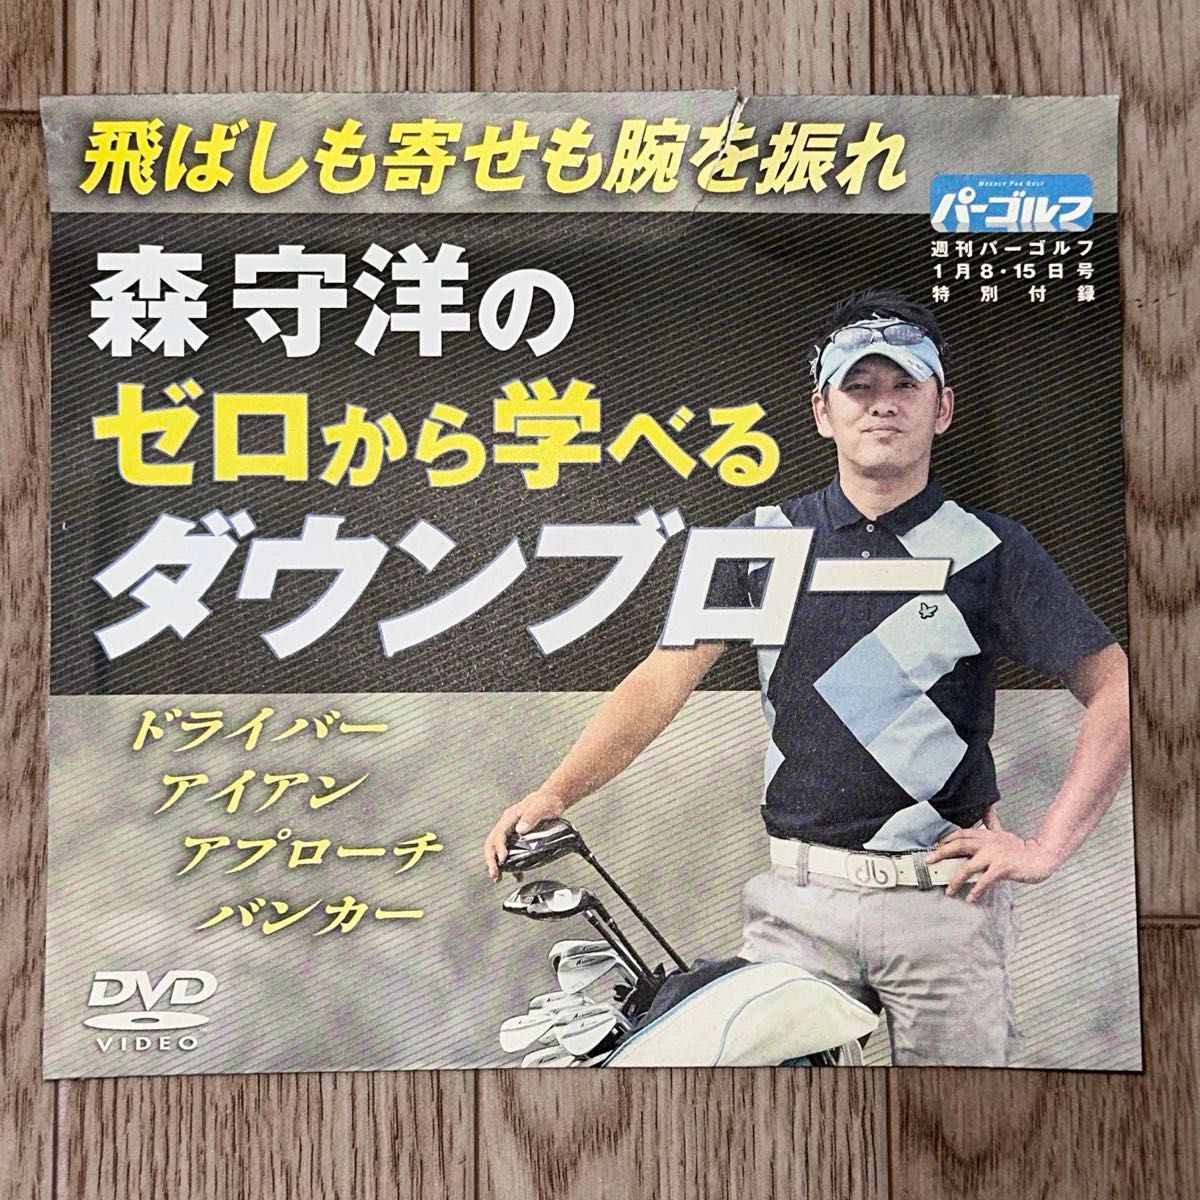 パーゴルフ付録DVD 森守洋のゼロから学べるダウンブロー